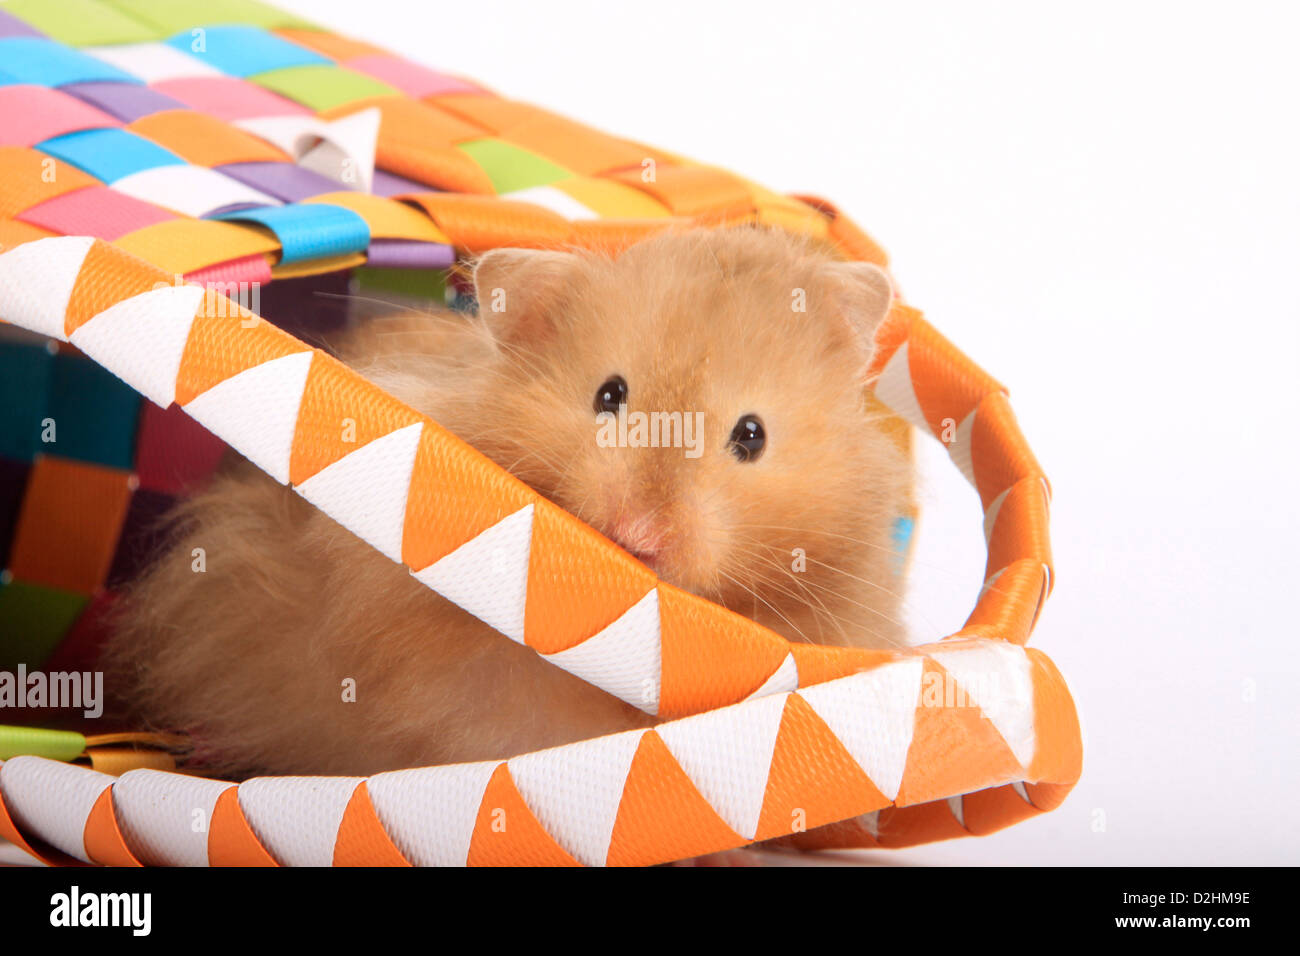 Haustier Hamster, Teddy Bear Hamster (Mesocricetus Auratus). Alleinstehende Erwachsene Blick aus einem bunten Tragetasche. Studio Bild ag Stockfoto